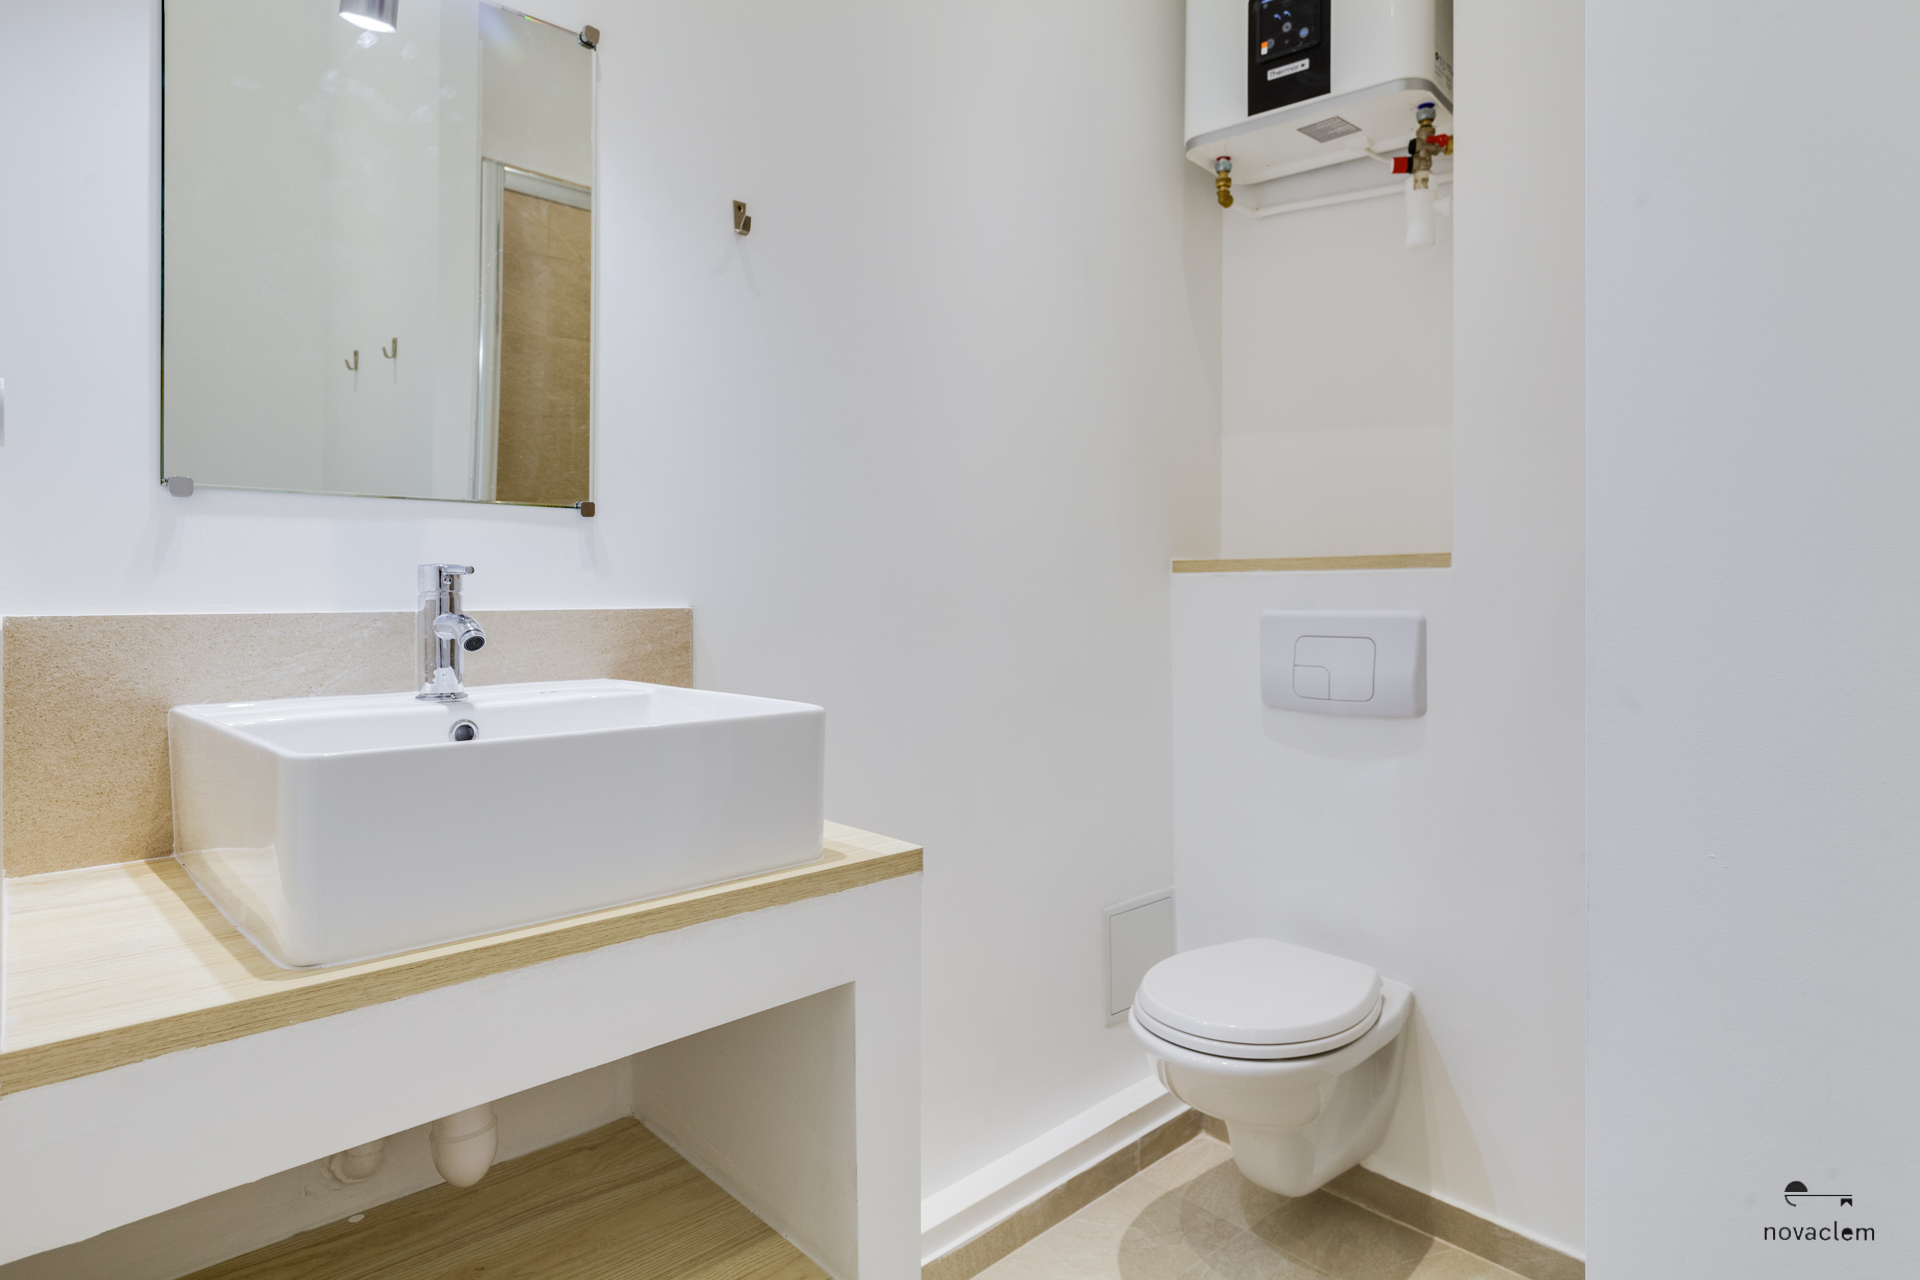 Novaclem - salle de bain après travaux T2 jardin zoologique - Investissement Marseille